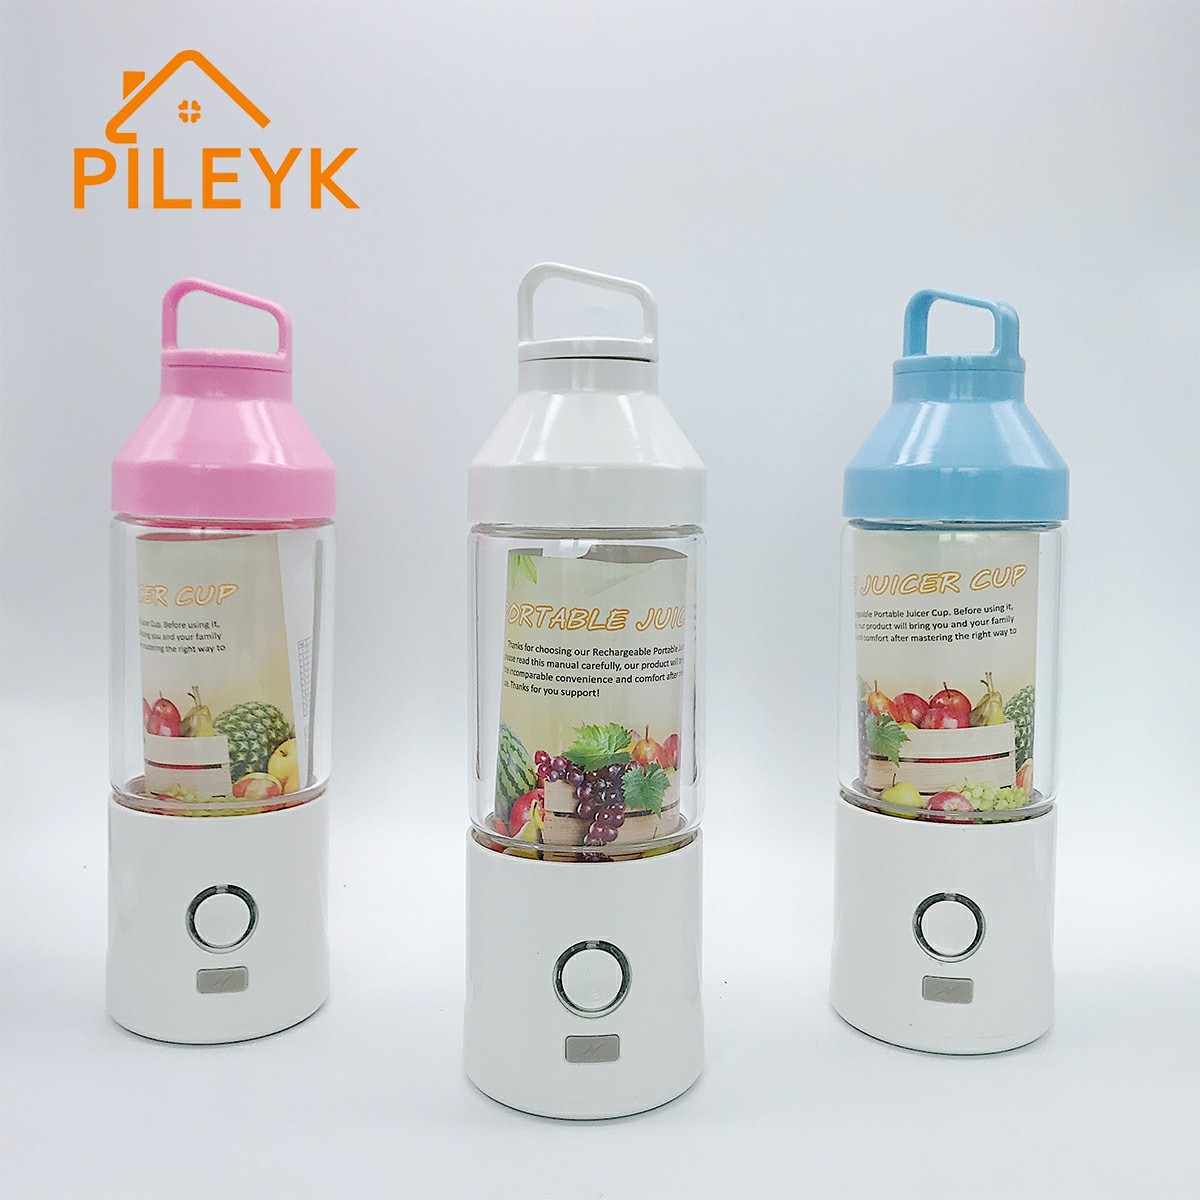 beauty blender set fruit juice machine energizer rechargeable batteries Stirring Cup Capsule Shape kitchen accessories set